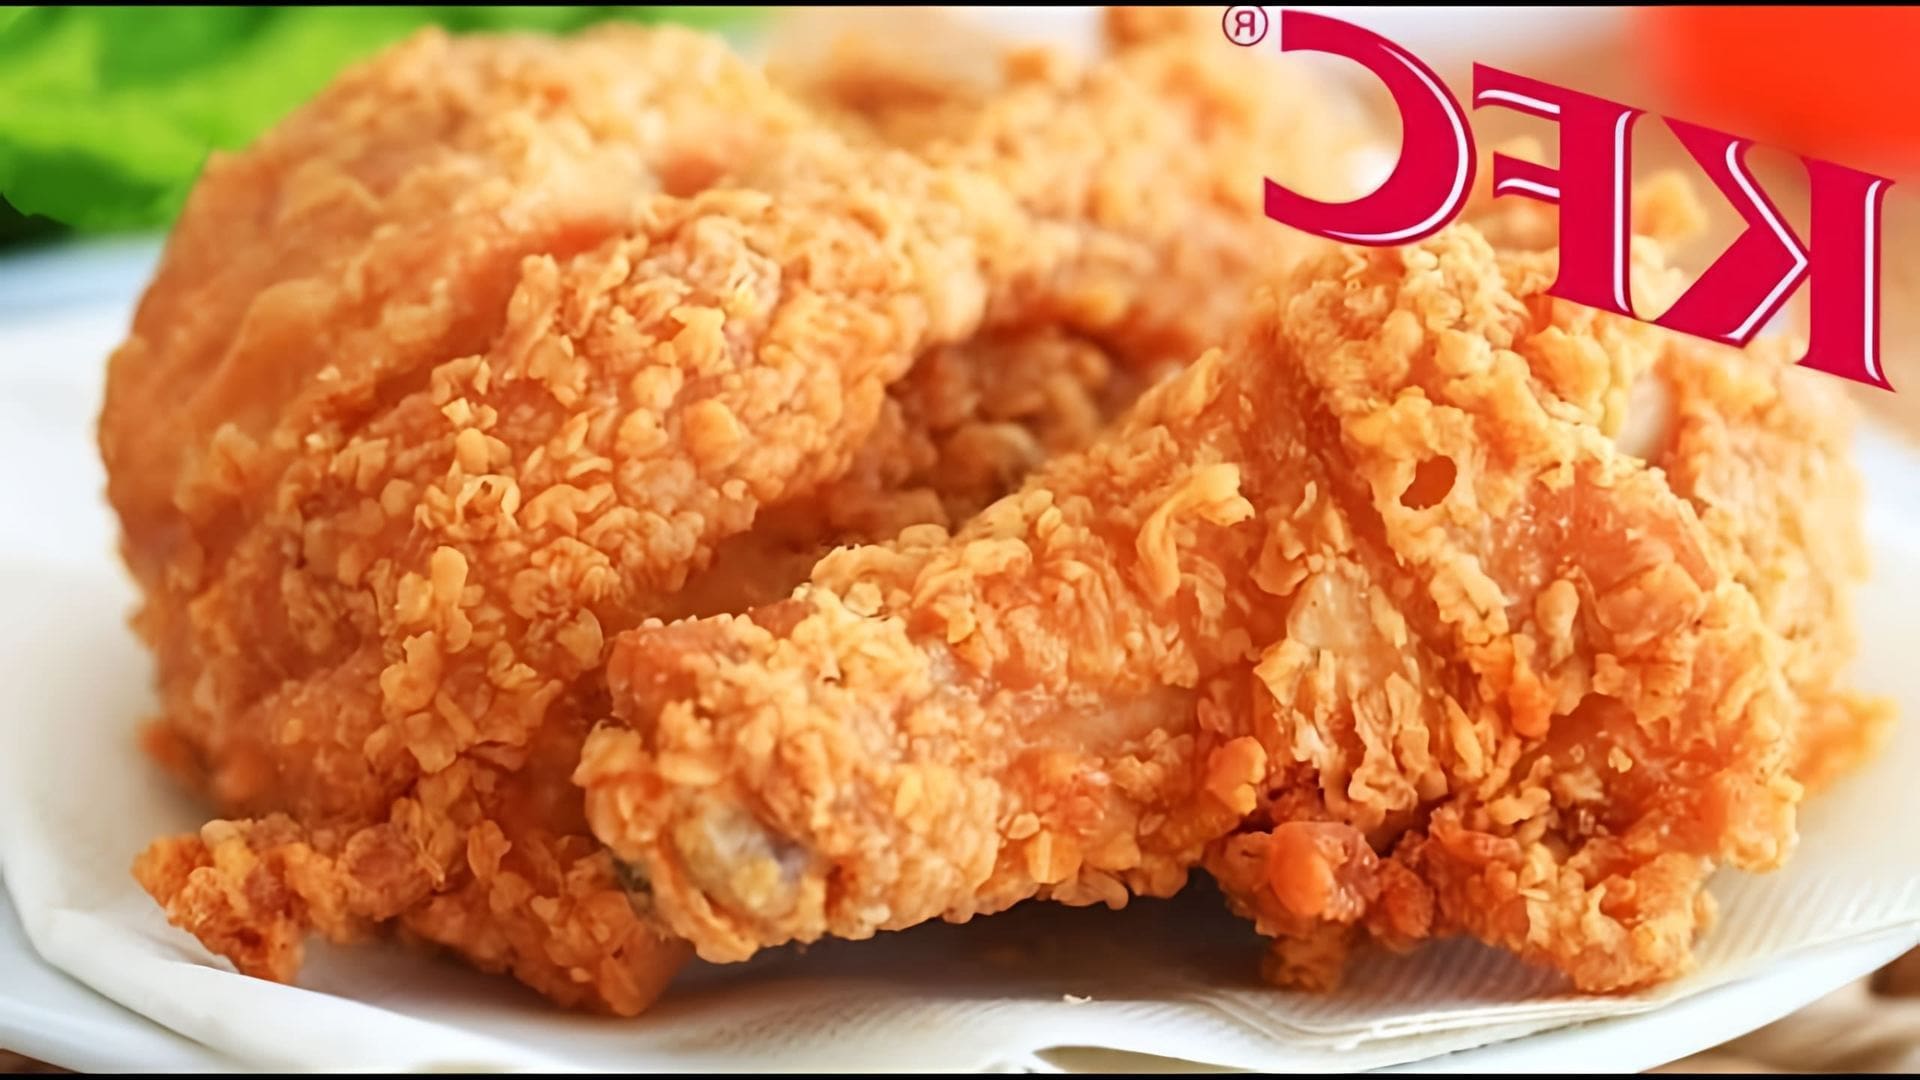 "Крылышки как в KFC? Легко!!!", - это видео-ролик, который показывает, как приготовить крылышки куриные, которые напоминают вкус тех, что подают в известной сети ресторанов быстрого питания KFC